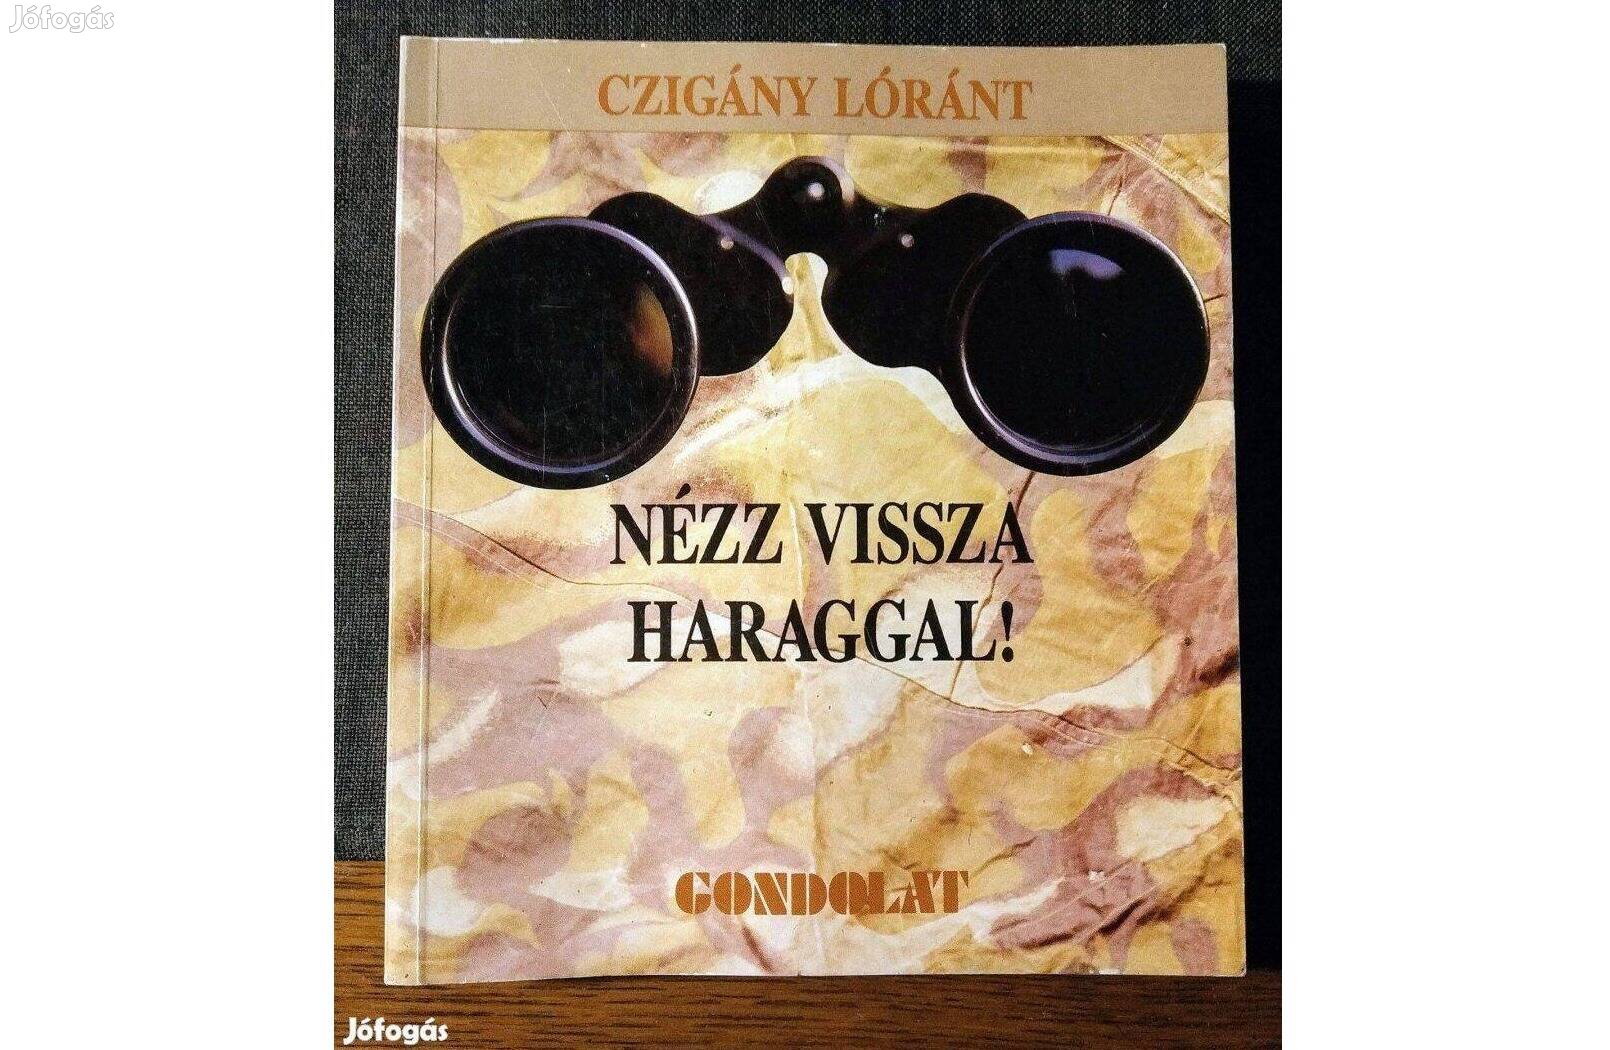 Nézz vissza haraggal! Államosított irodalom Magyarországon 1946-1988